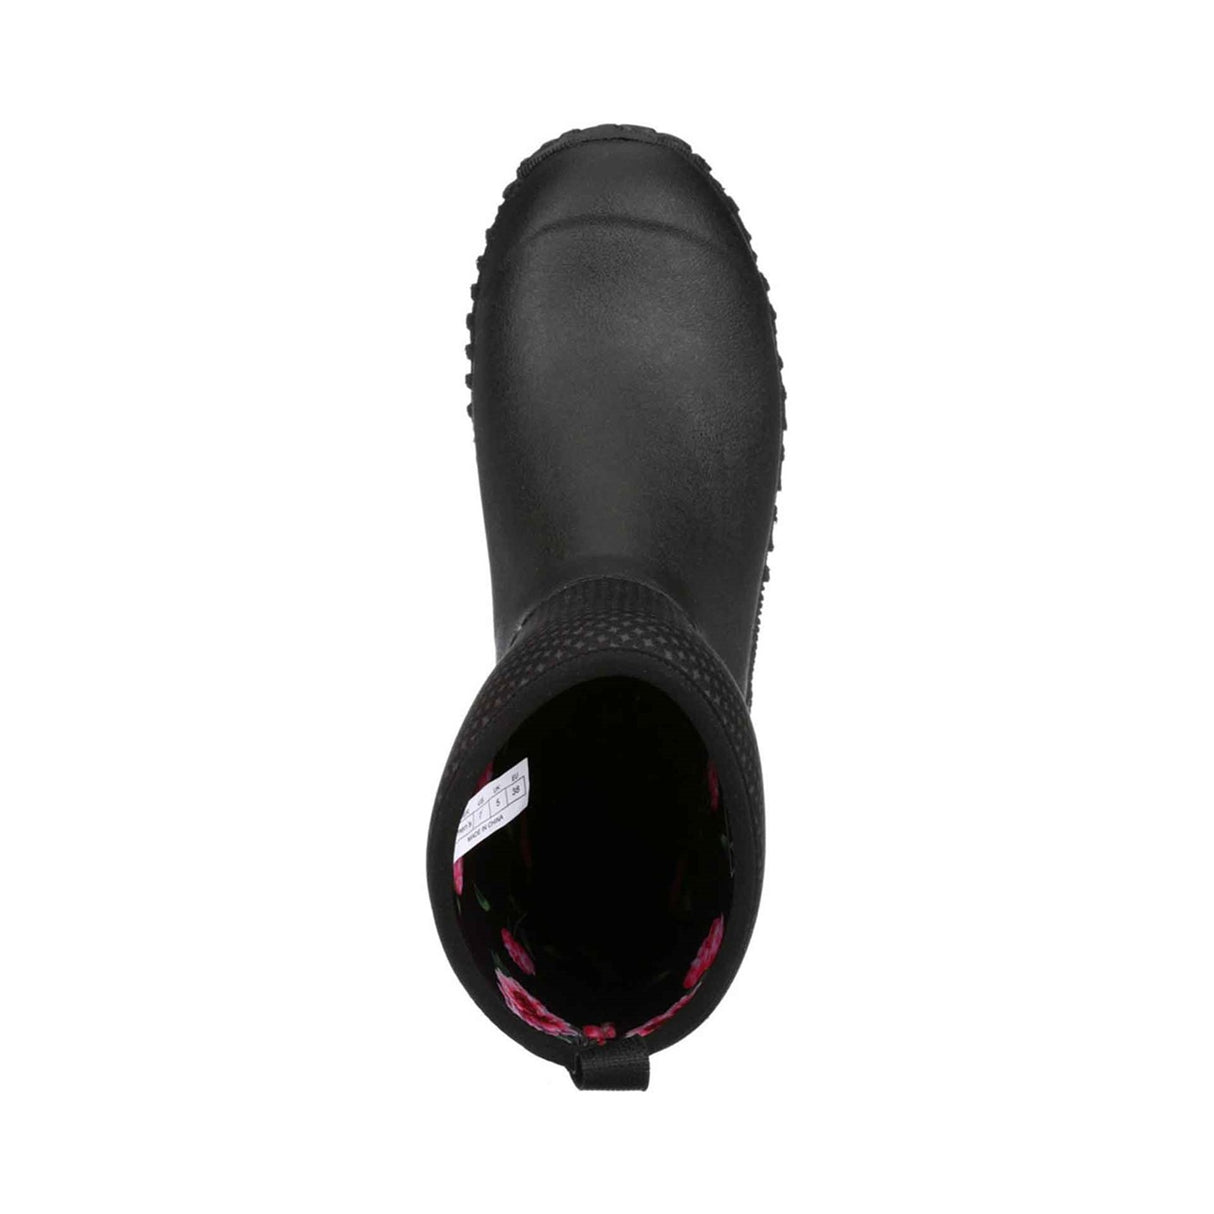 Women's RHS Muckster II Short Boots Charcoal Print